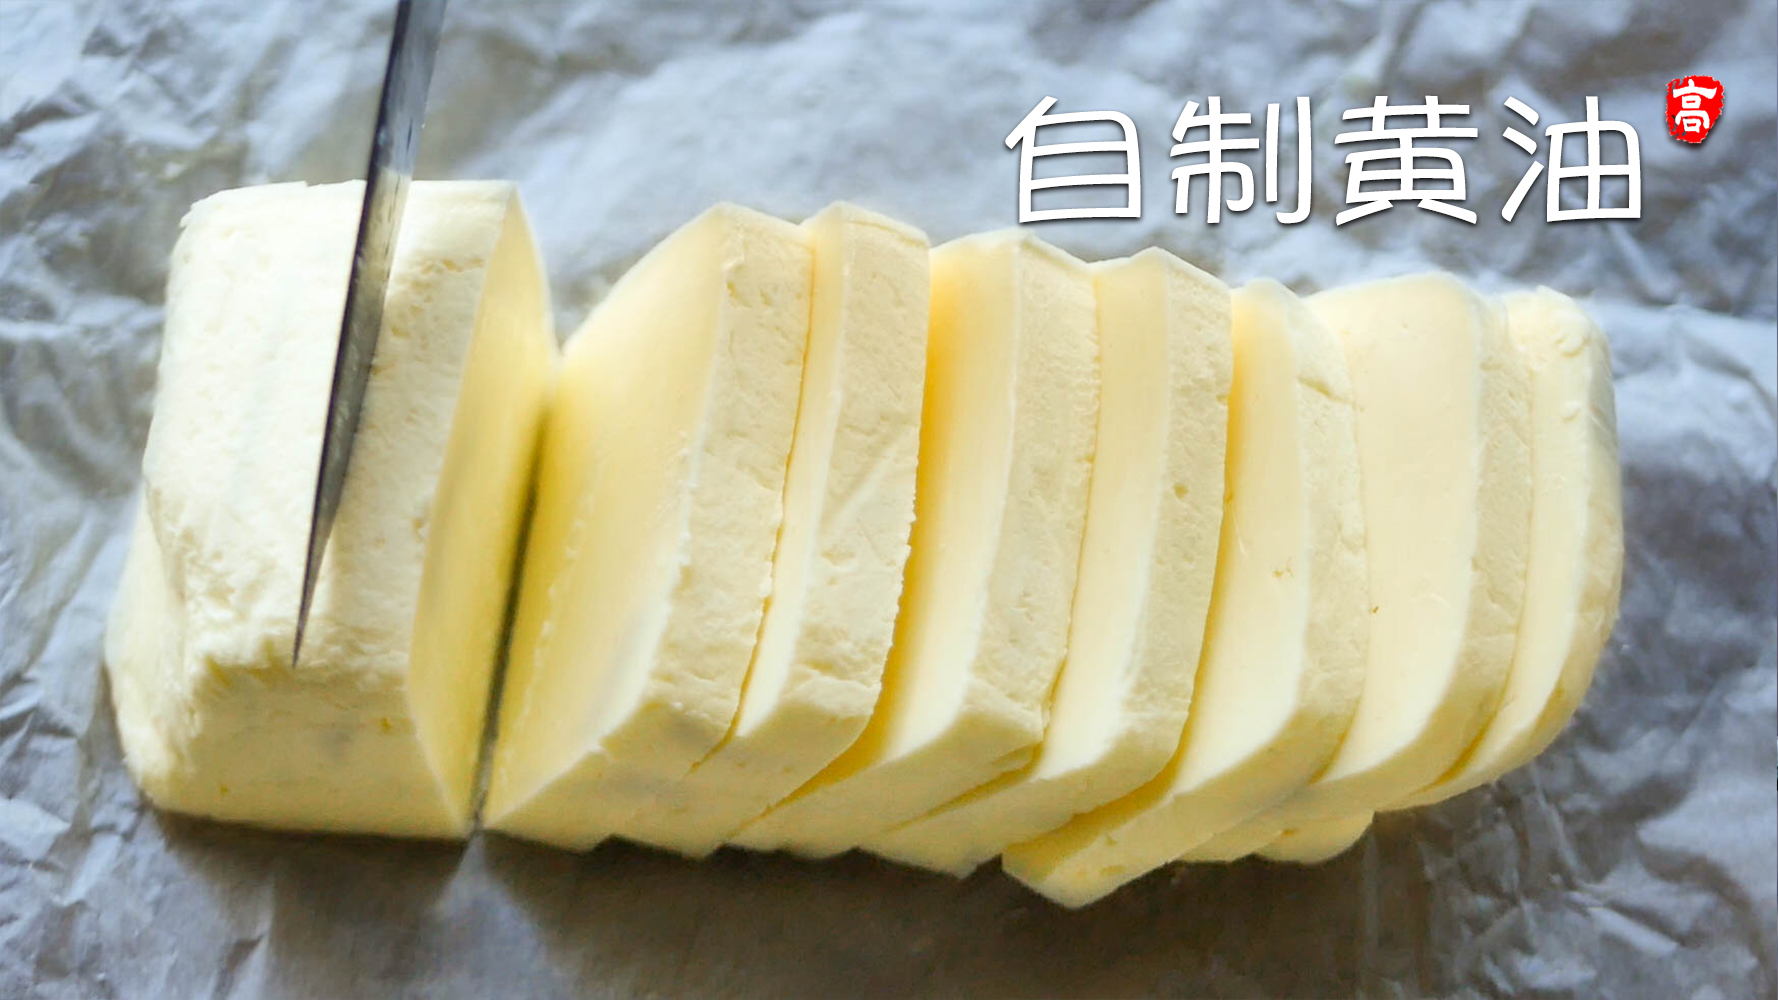 【小高姐】自制黄油 奶制品的神奇变化